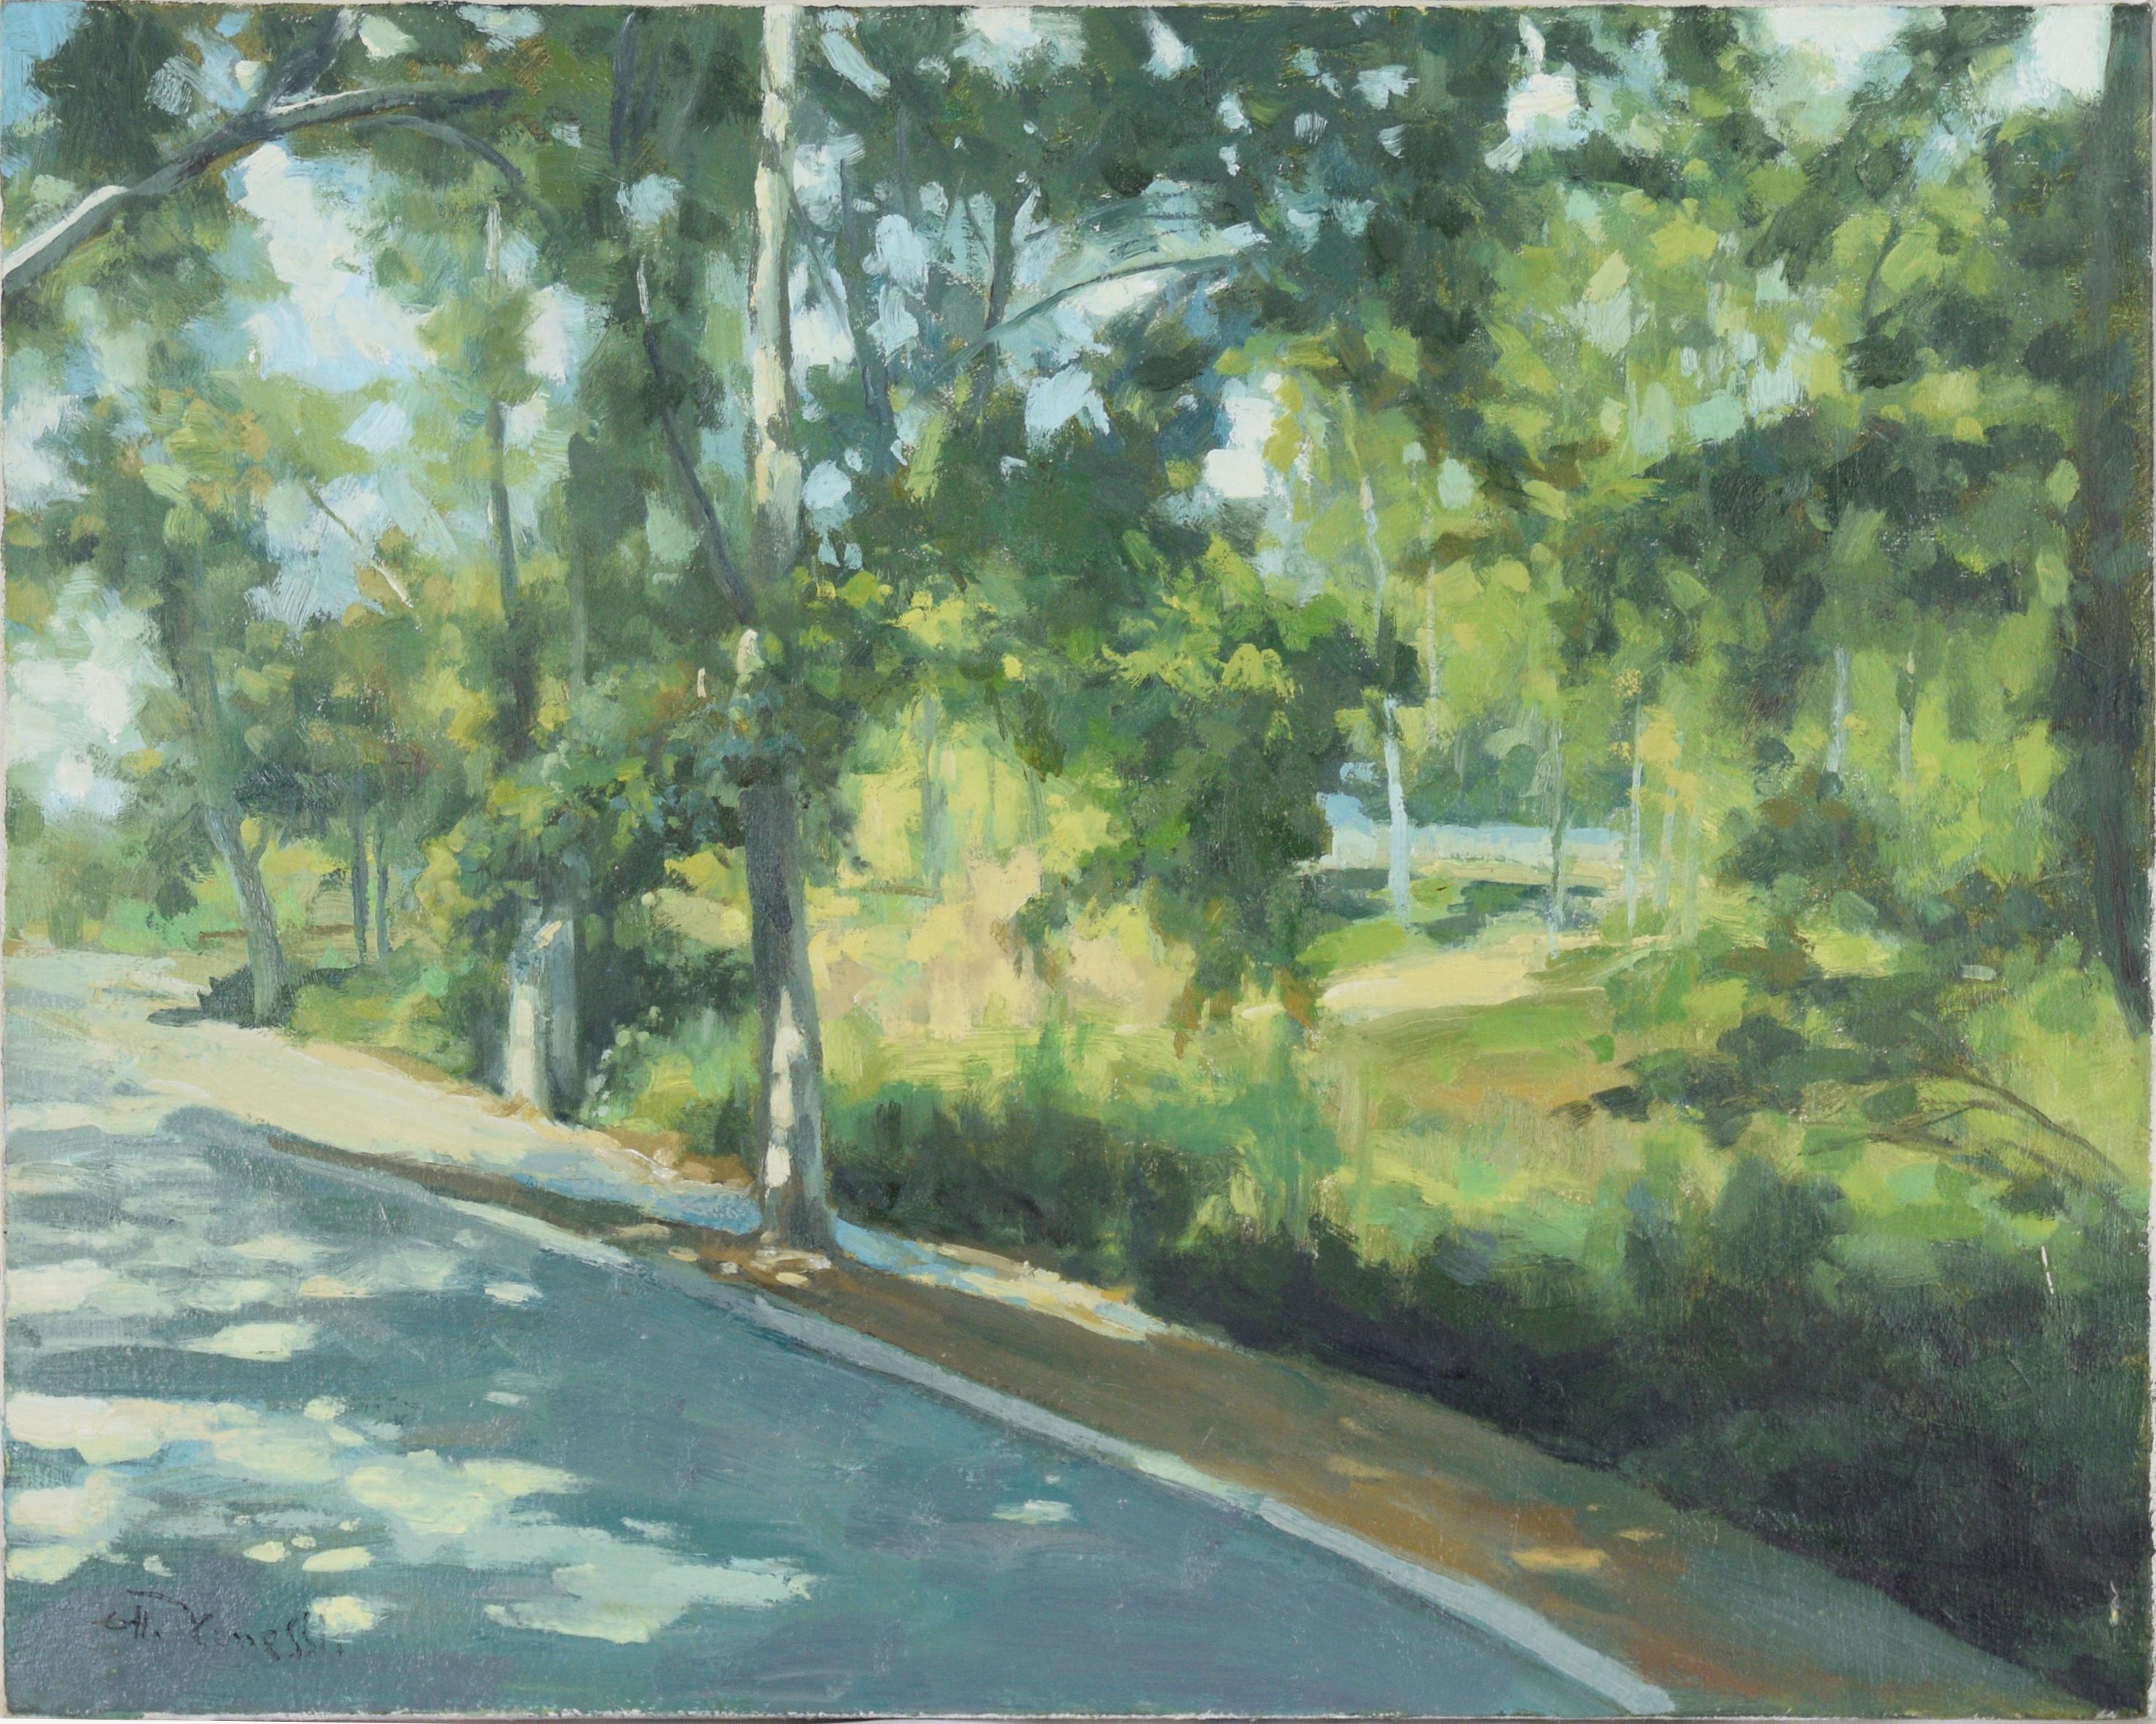 Landscape Painting Gholam Yunessi - Le trottoir le long du parc - Paysage à l'huile sur toile